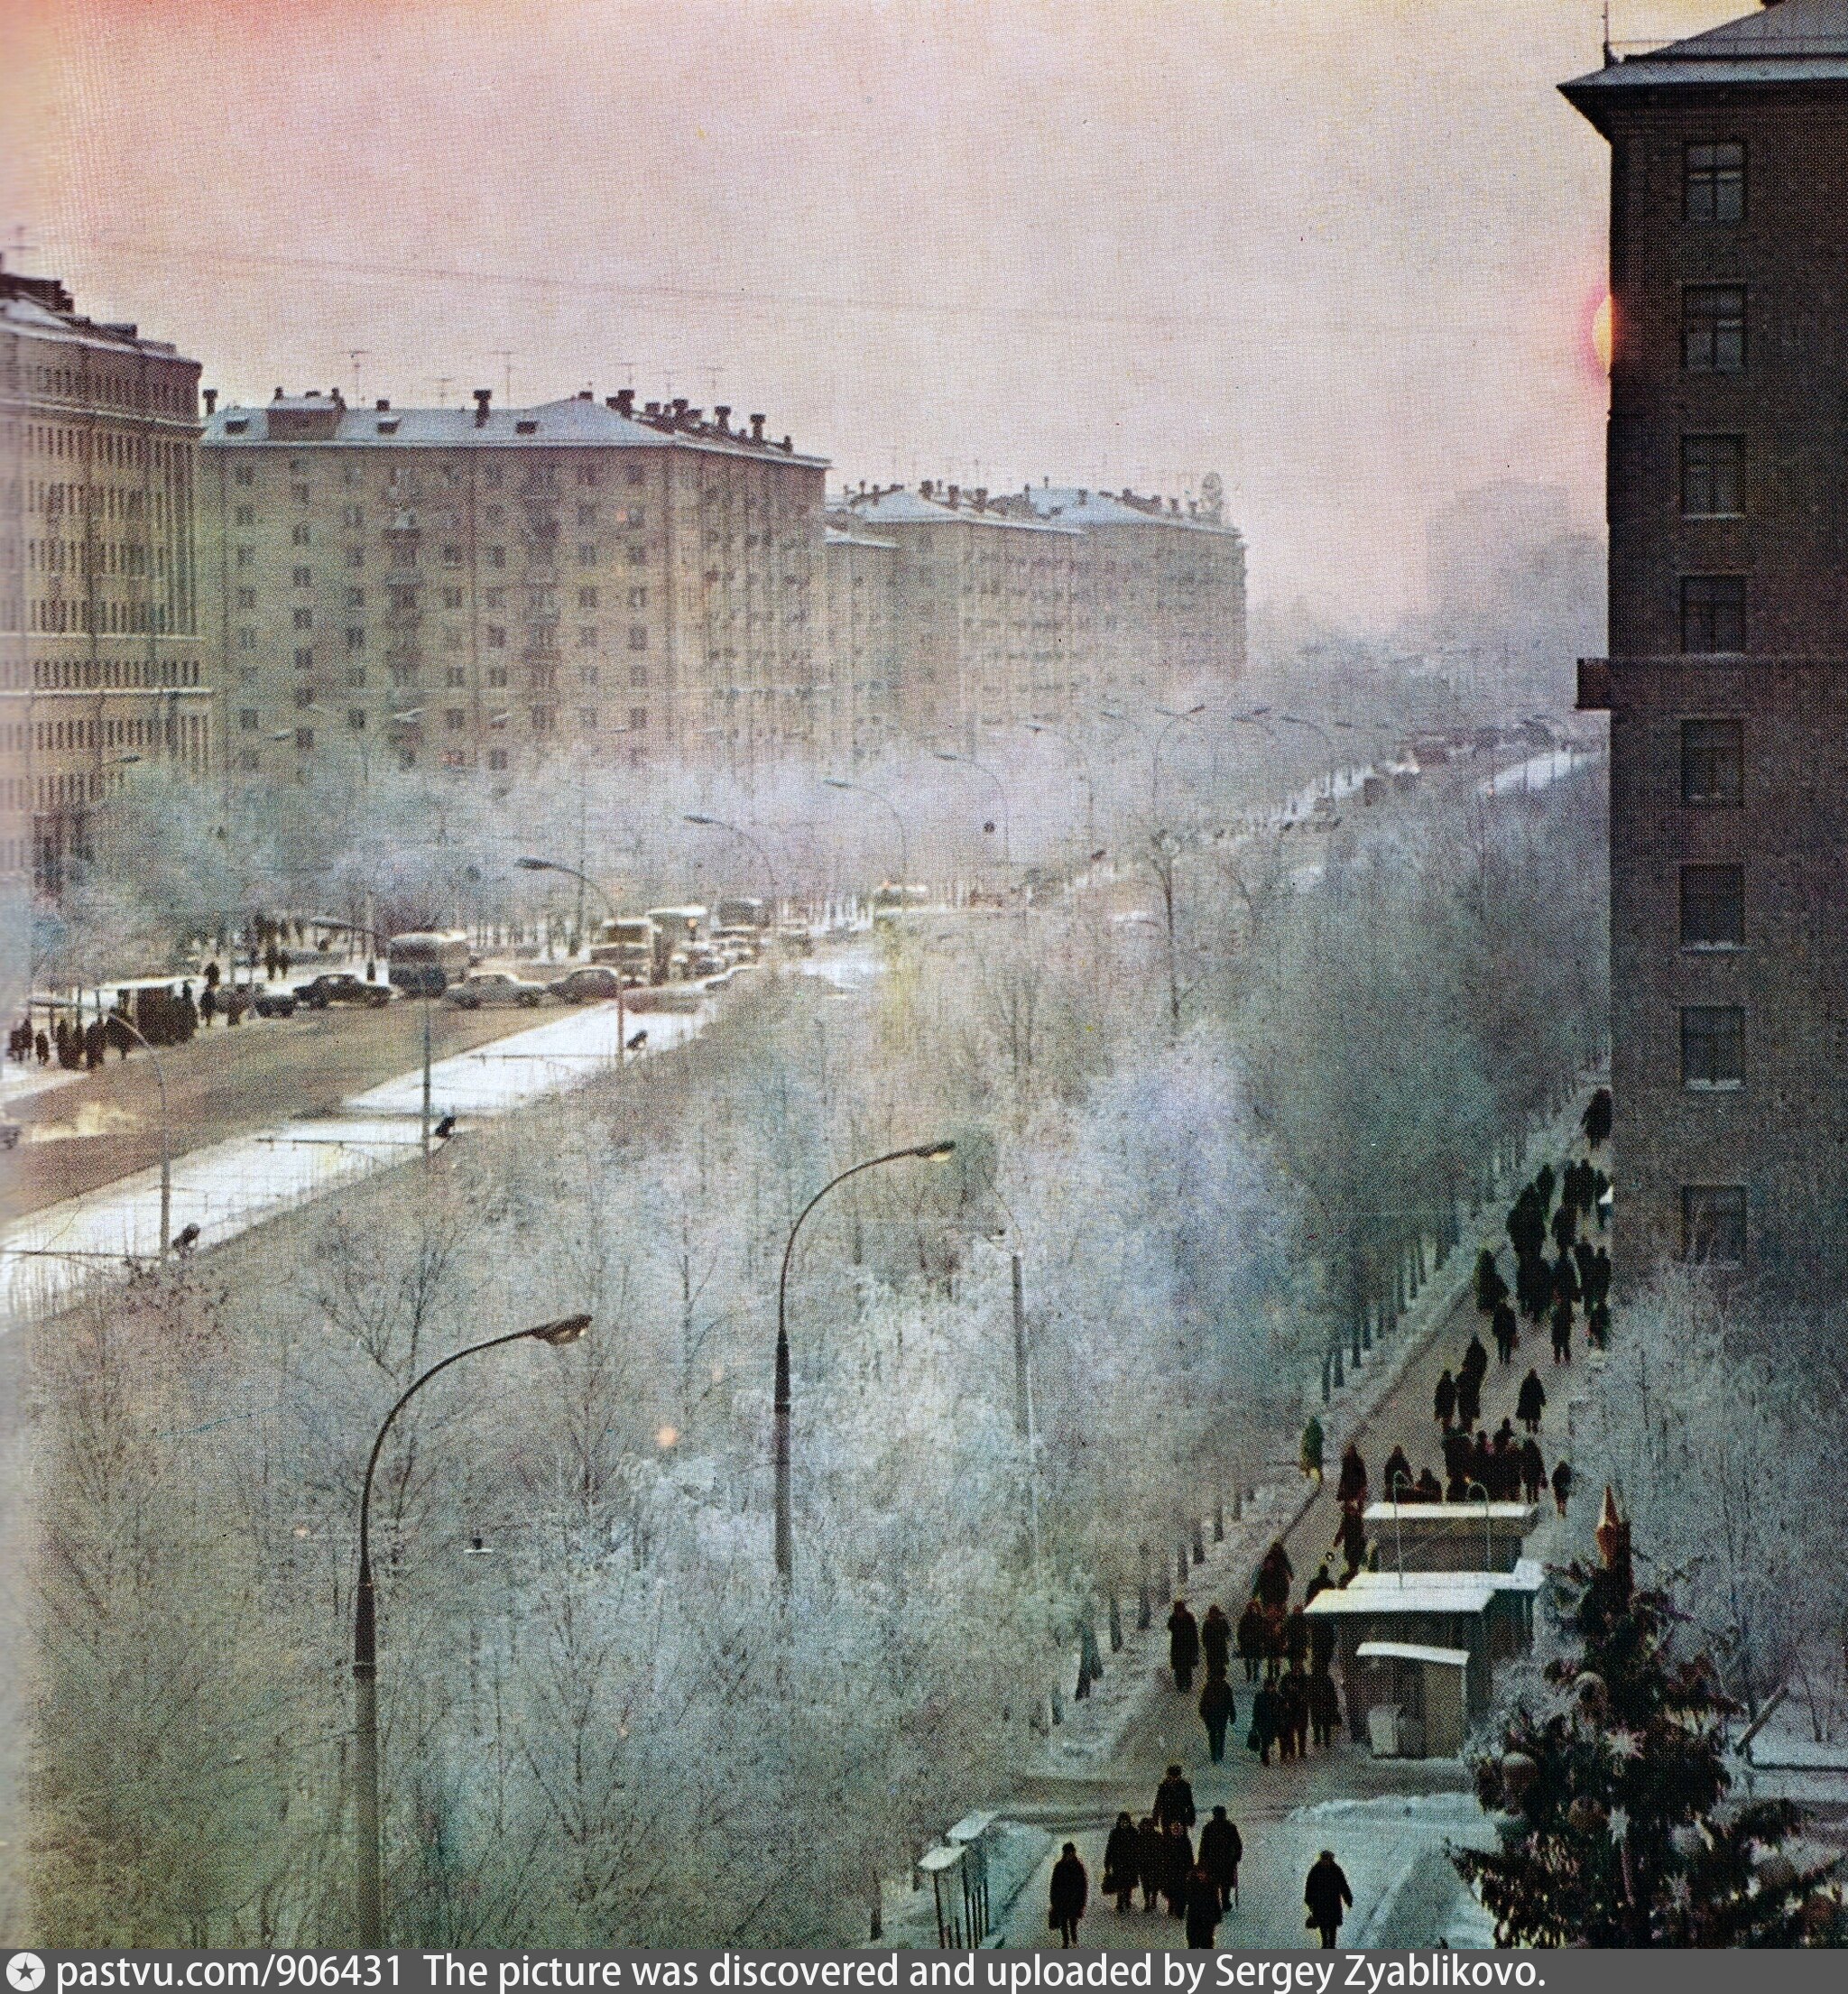 Фотографии ленинского проспекта